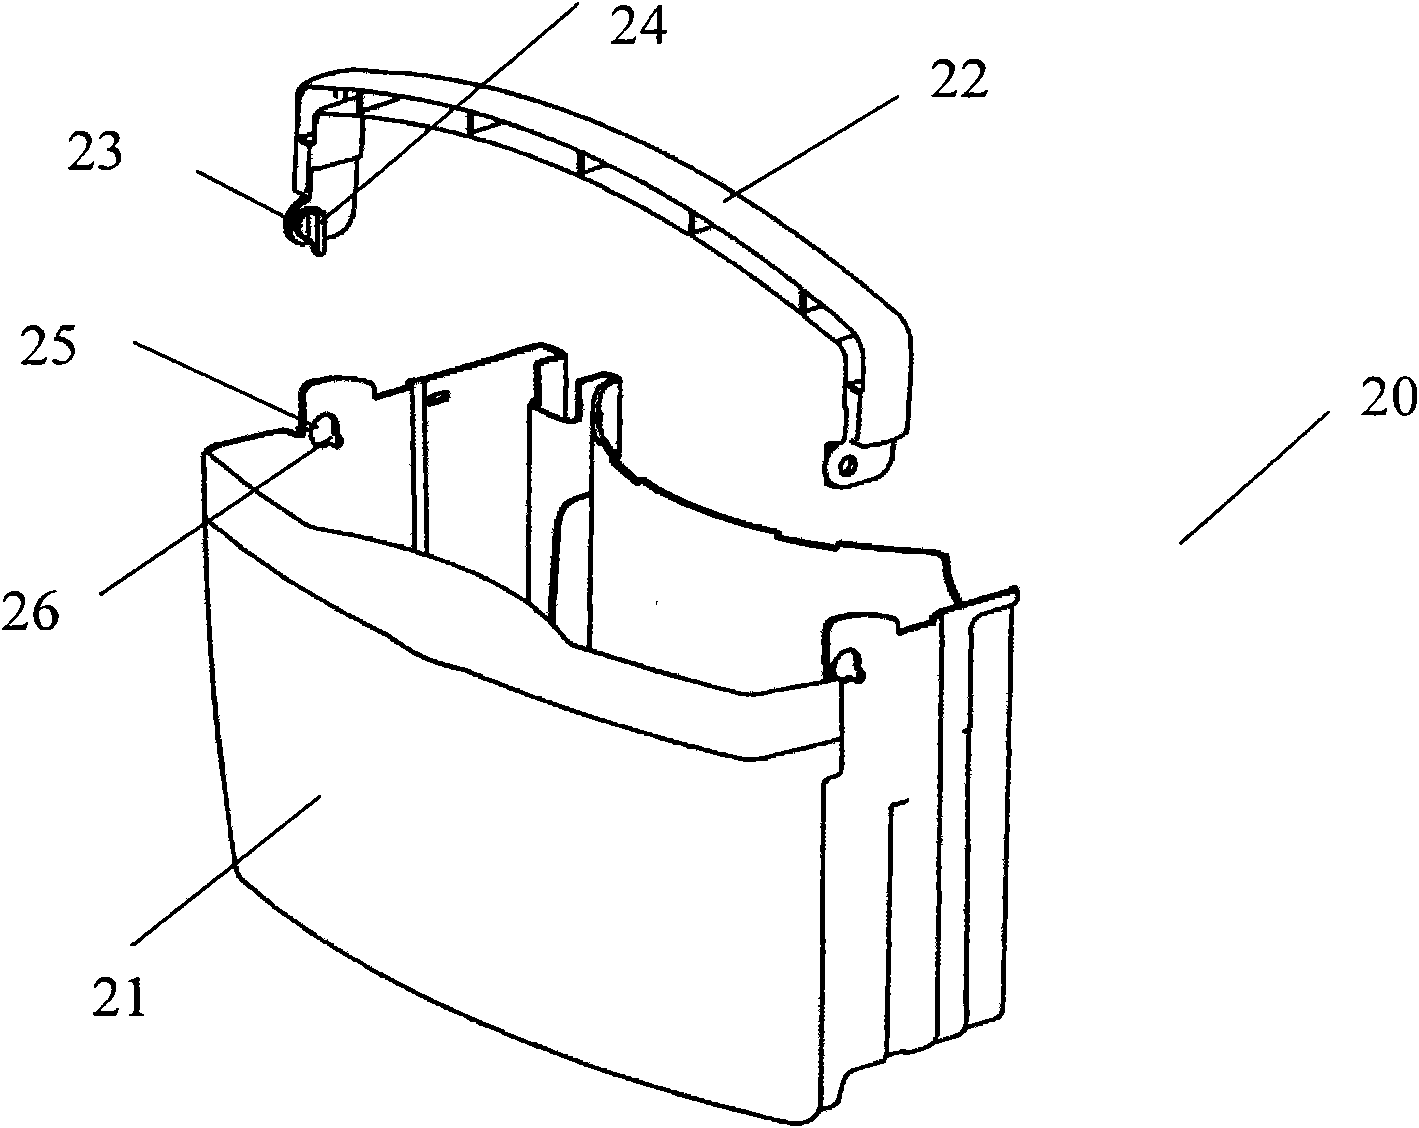 Water-receiving bucket of dehumidifier